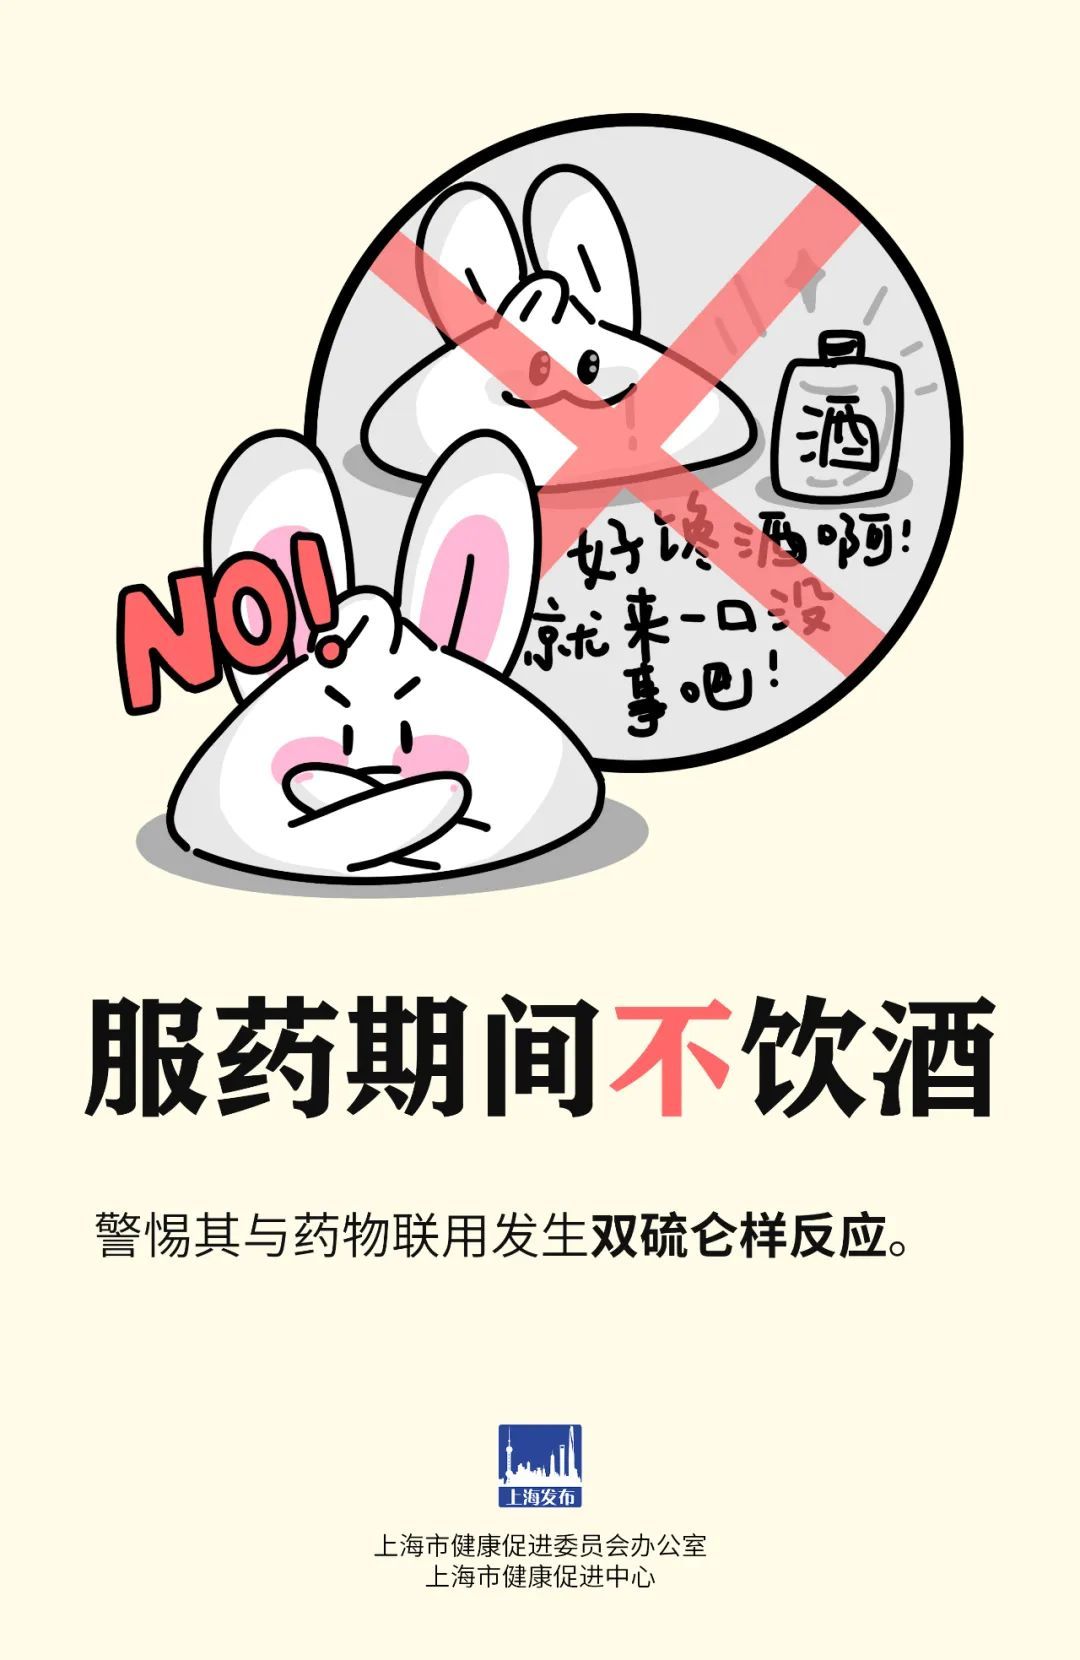 上海發佈：@市民朋友，盲目囤葯不可取，六點提示請收好